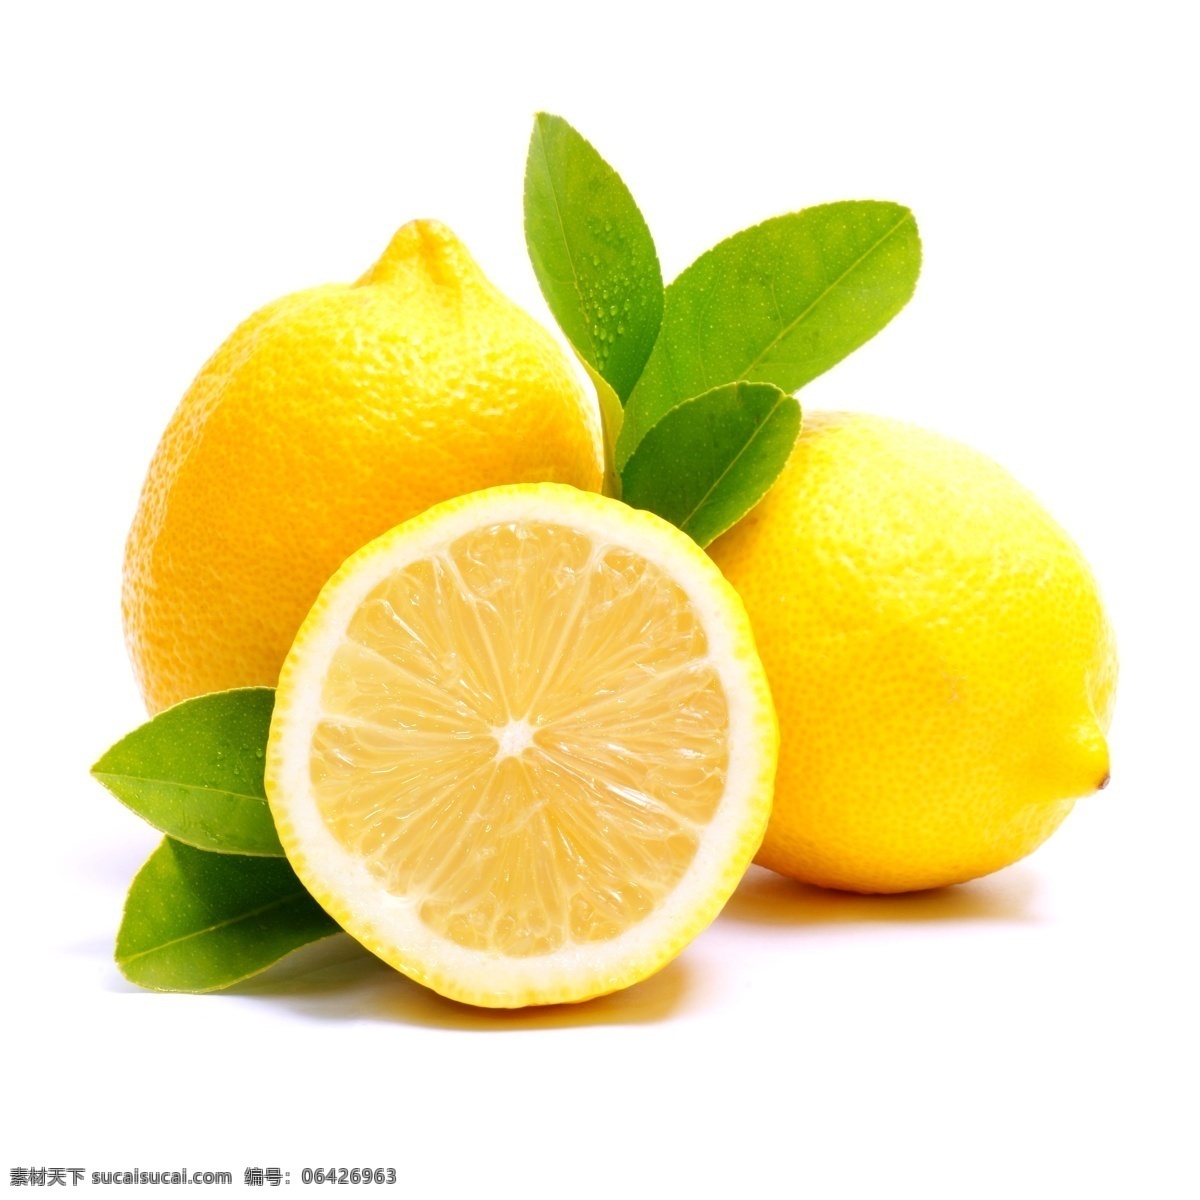 柠檬 切开的水果 新鲜 水果 新鲜水果 果实 水果摄影 绿叶 蔬菜图片 餐饮美食